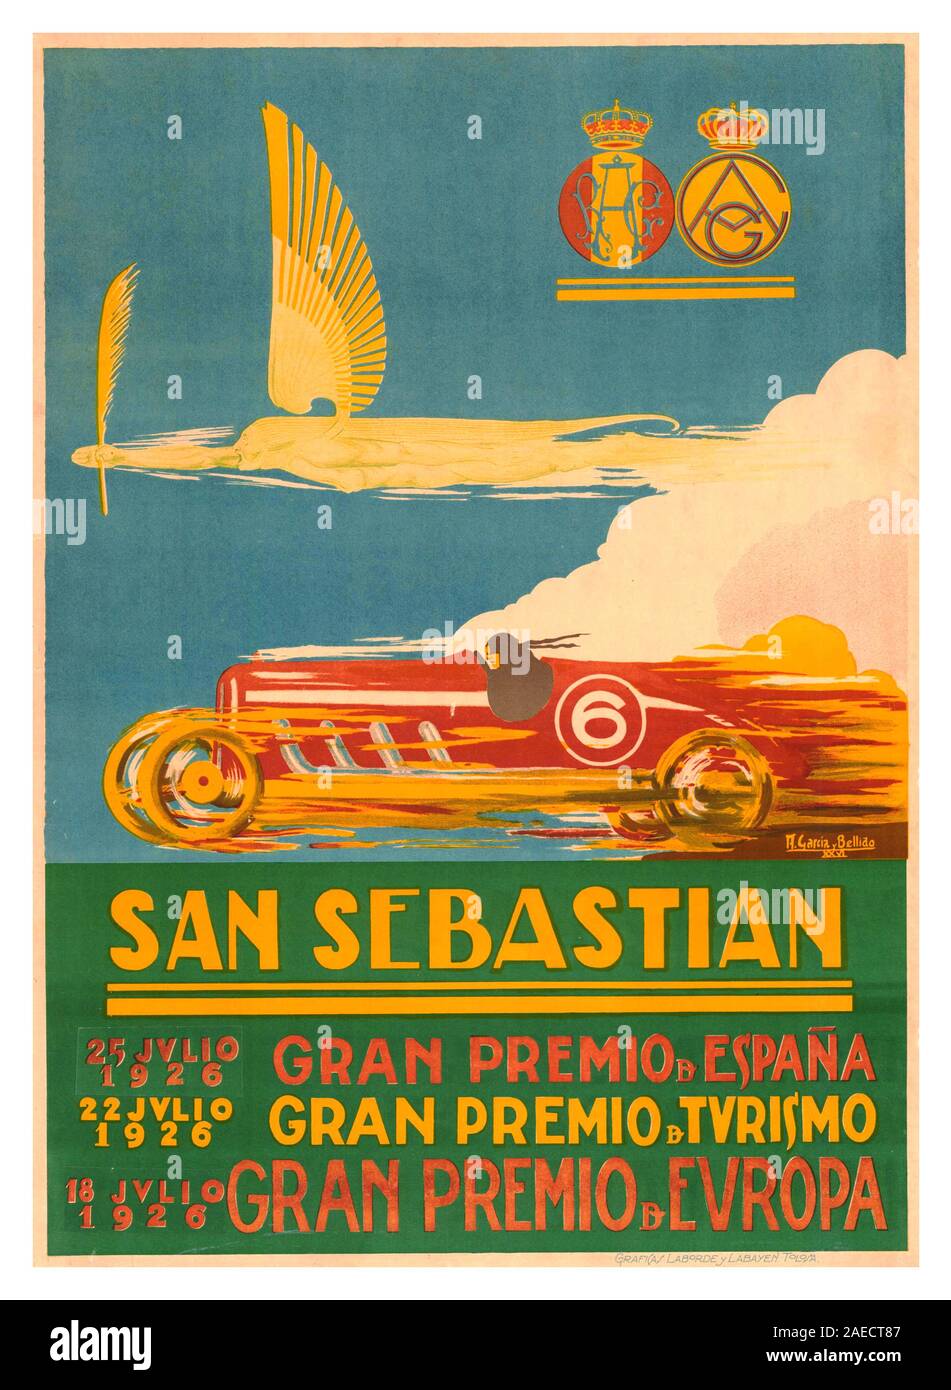 Grand Prix d'époque 1926 affiche pour le Grand Prix de San Sebastián 1926 qui s'est tenu au Circuito Lasarte à San Sebastian, Espagne, le 18 juillet 1926. Il a également été désigné comme Grand Prix d'Europe, et a été la troisième course de la saison de Championnat du monde des constructeurs AIACR 1926 (prédécesseur de la FIA). Le Delage 155B a fait ses débuts ici mais s'est avéré être assez difficile à conduire, les travaux Bugatti 39A a pris la 1ère place victoire et la troisième place dans l'événement. Banque D'Images